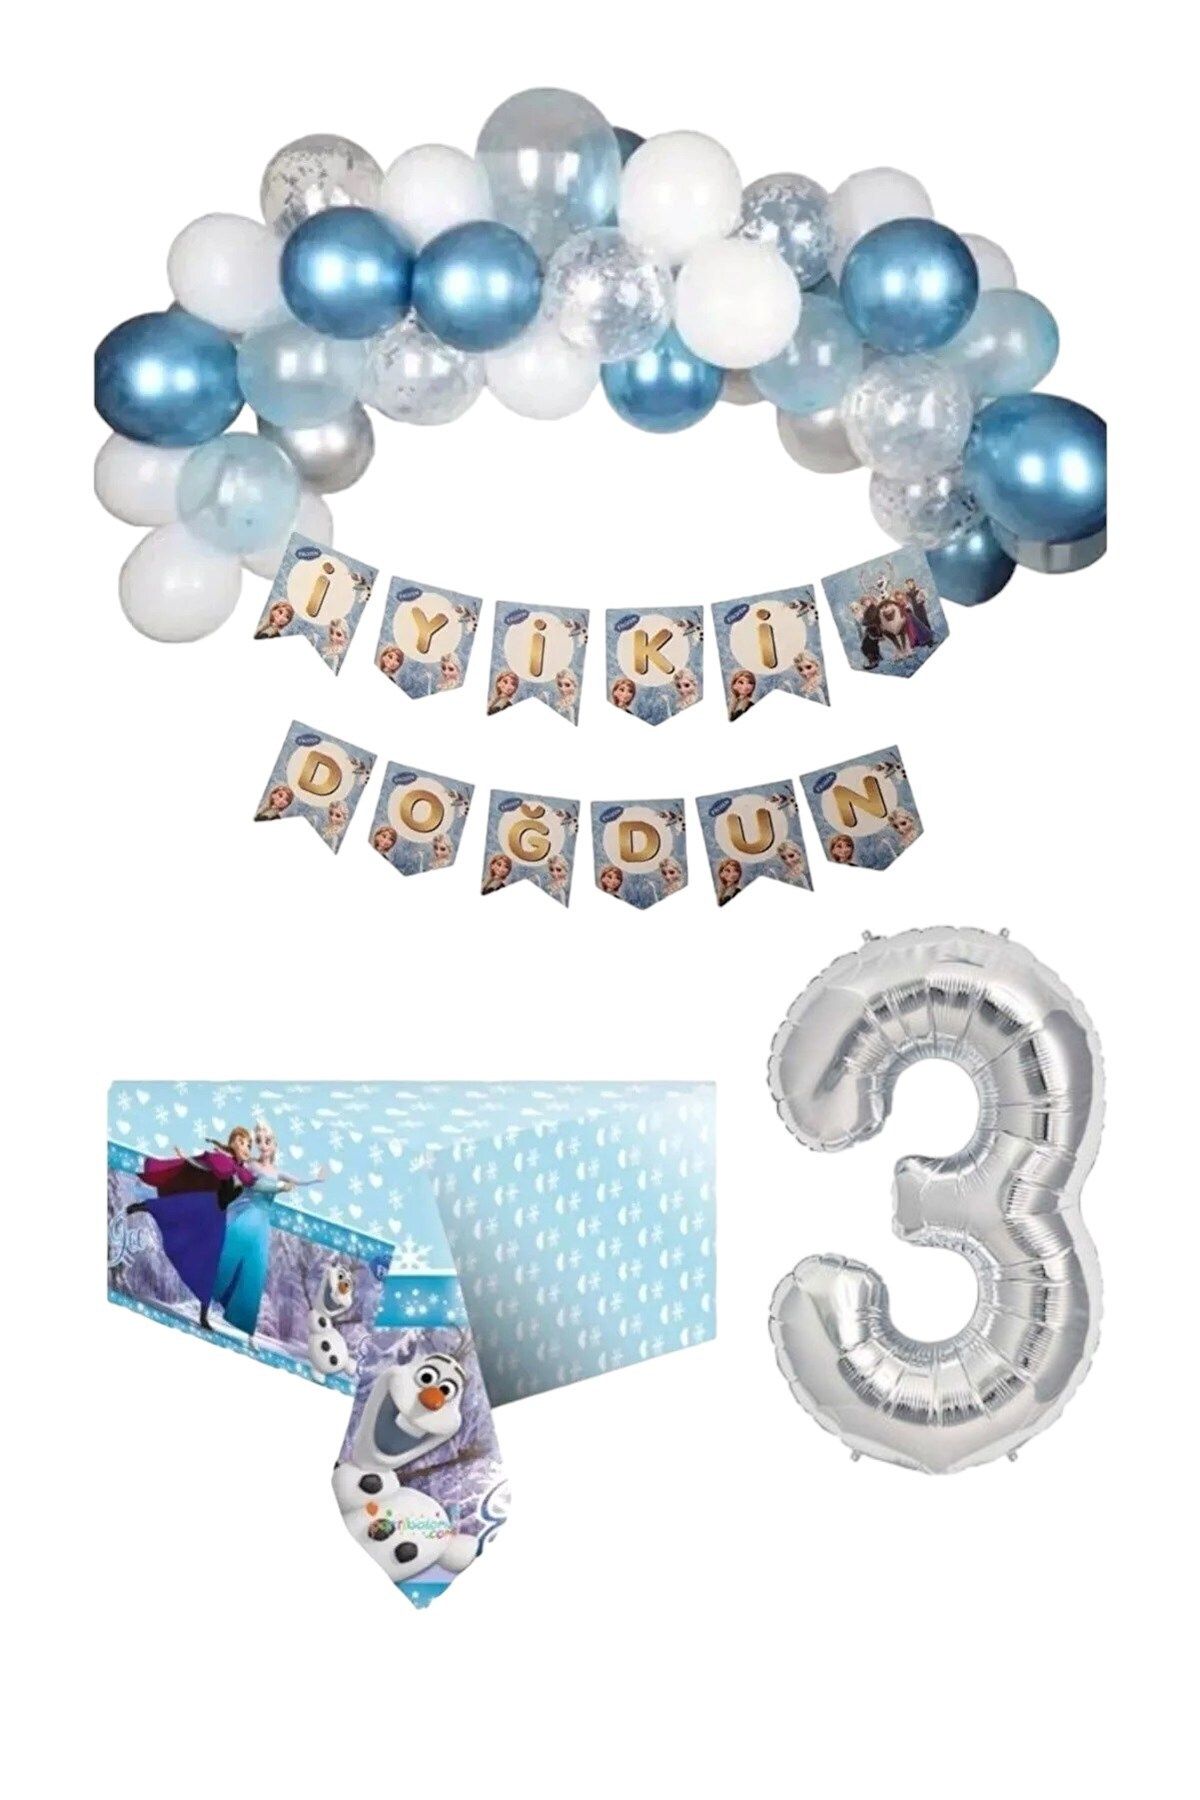 Azebu Frozen Elsa Anna Karlar Kraliçesi Karlar Ülkesi 3 Yaş Doğum Günü Konsepti Süsleme Seti